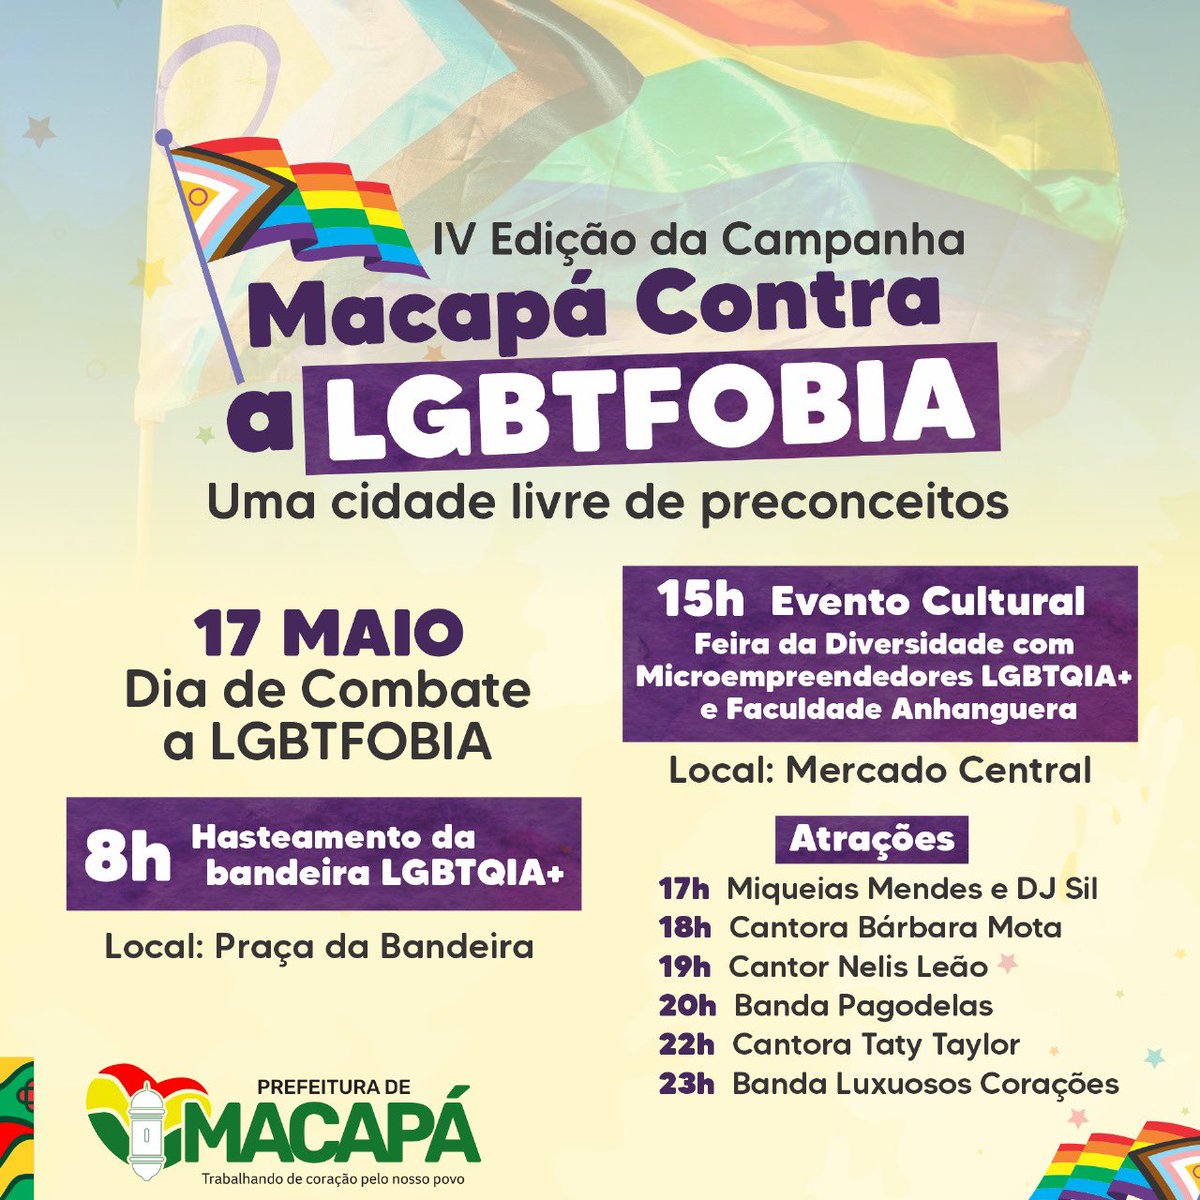 Dia de Combate a LGBTfobia tem programação especial em Macapá!

A quarta edição da campanha traz o tema “Macapá contra LGBTfobia - uma cidade livre de preconceitos” e promove atividades culturais com shows,